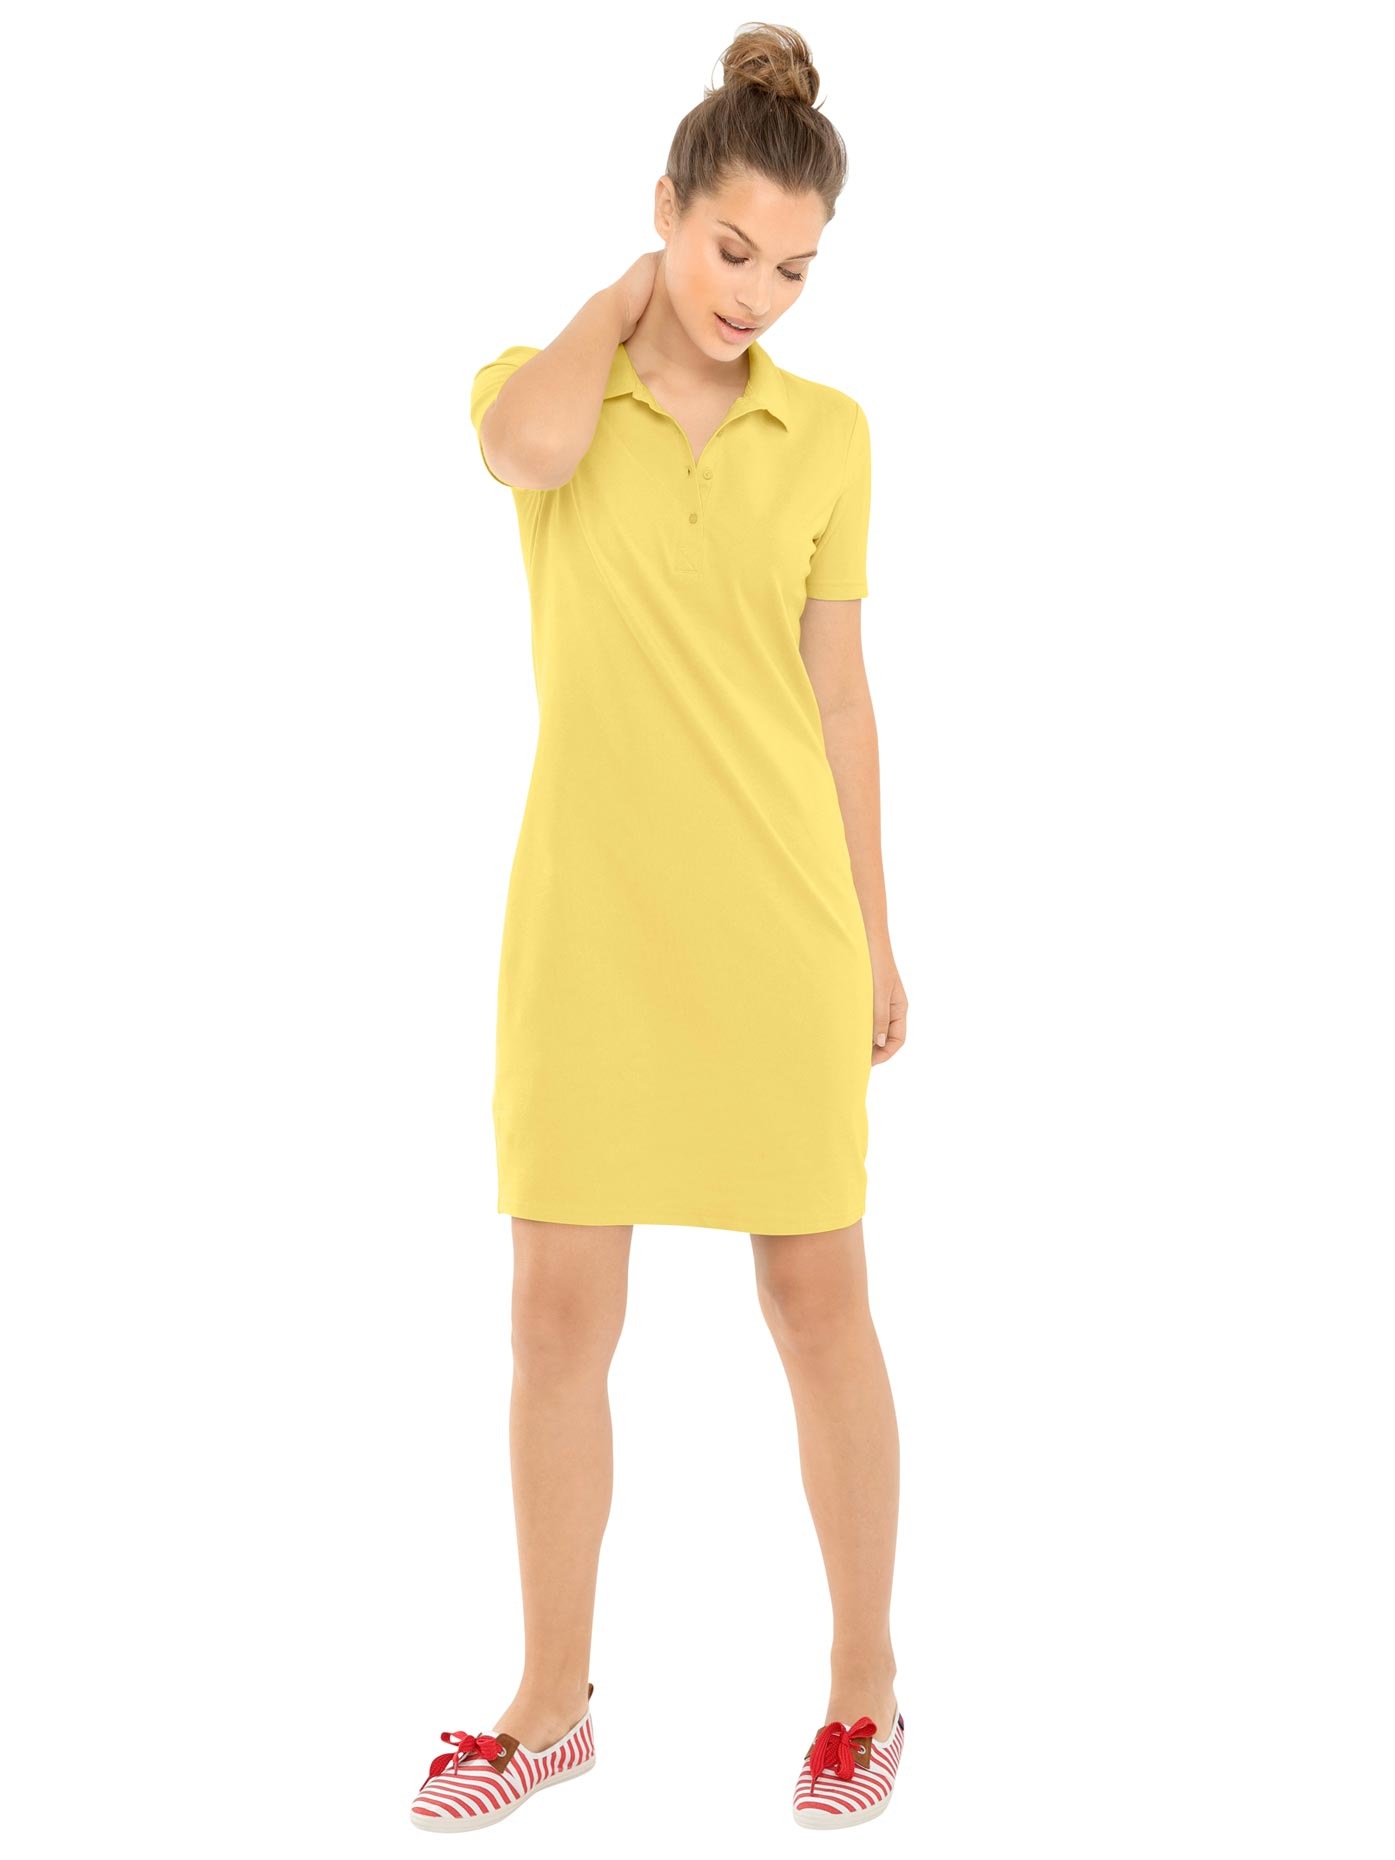 günstig shoppen ▻ Gelbes-Kleid